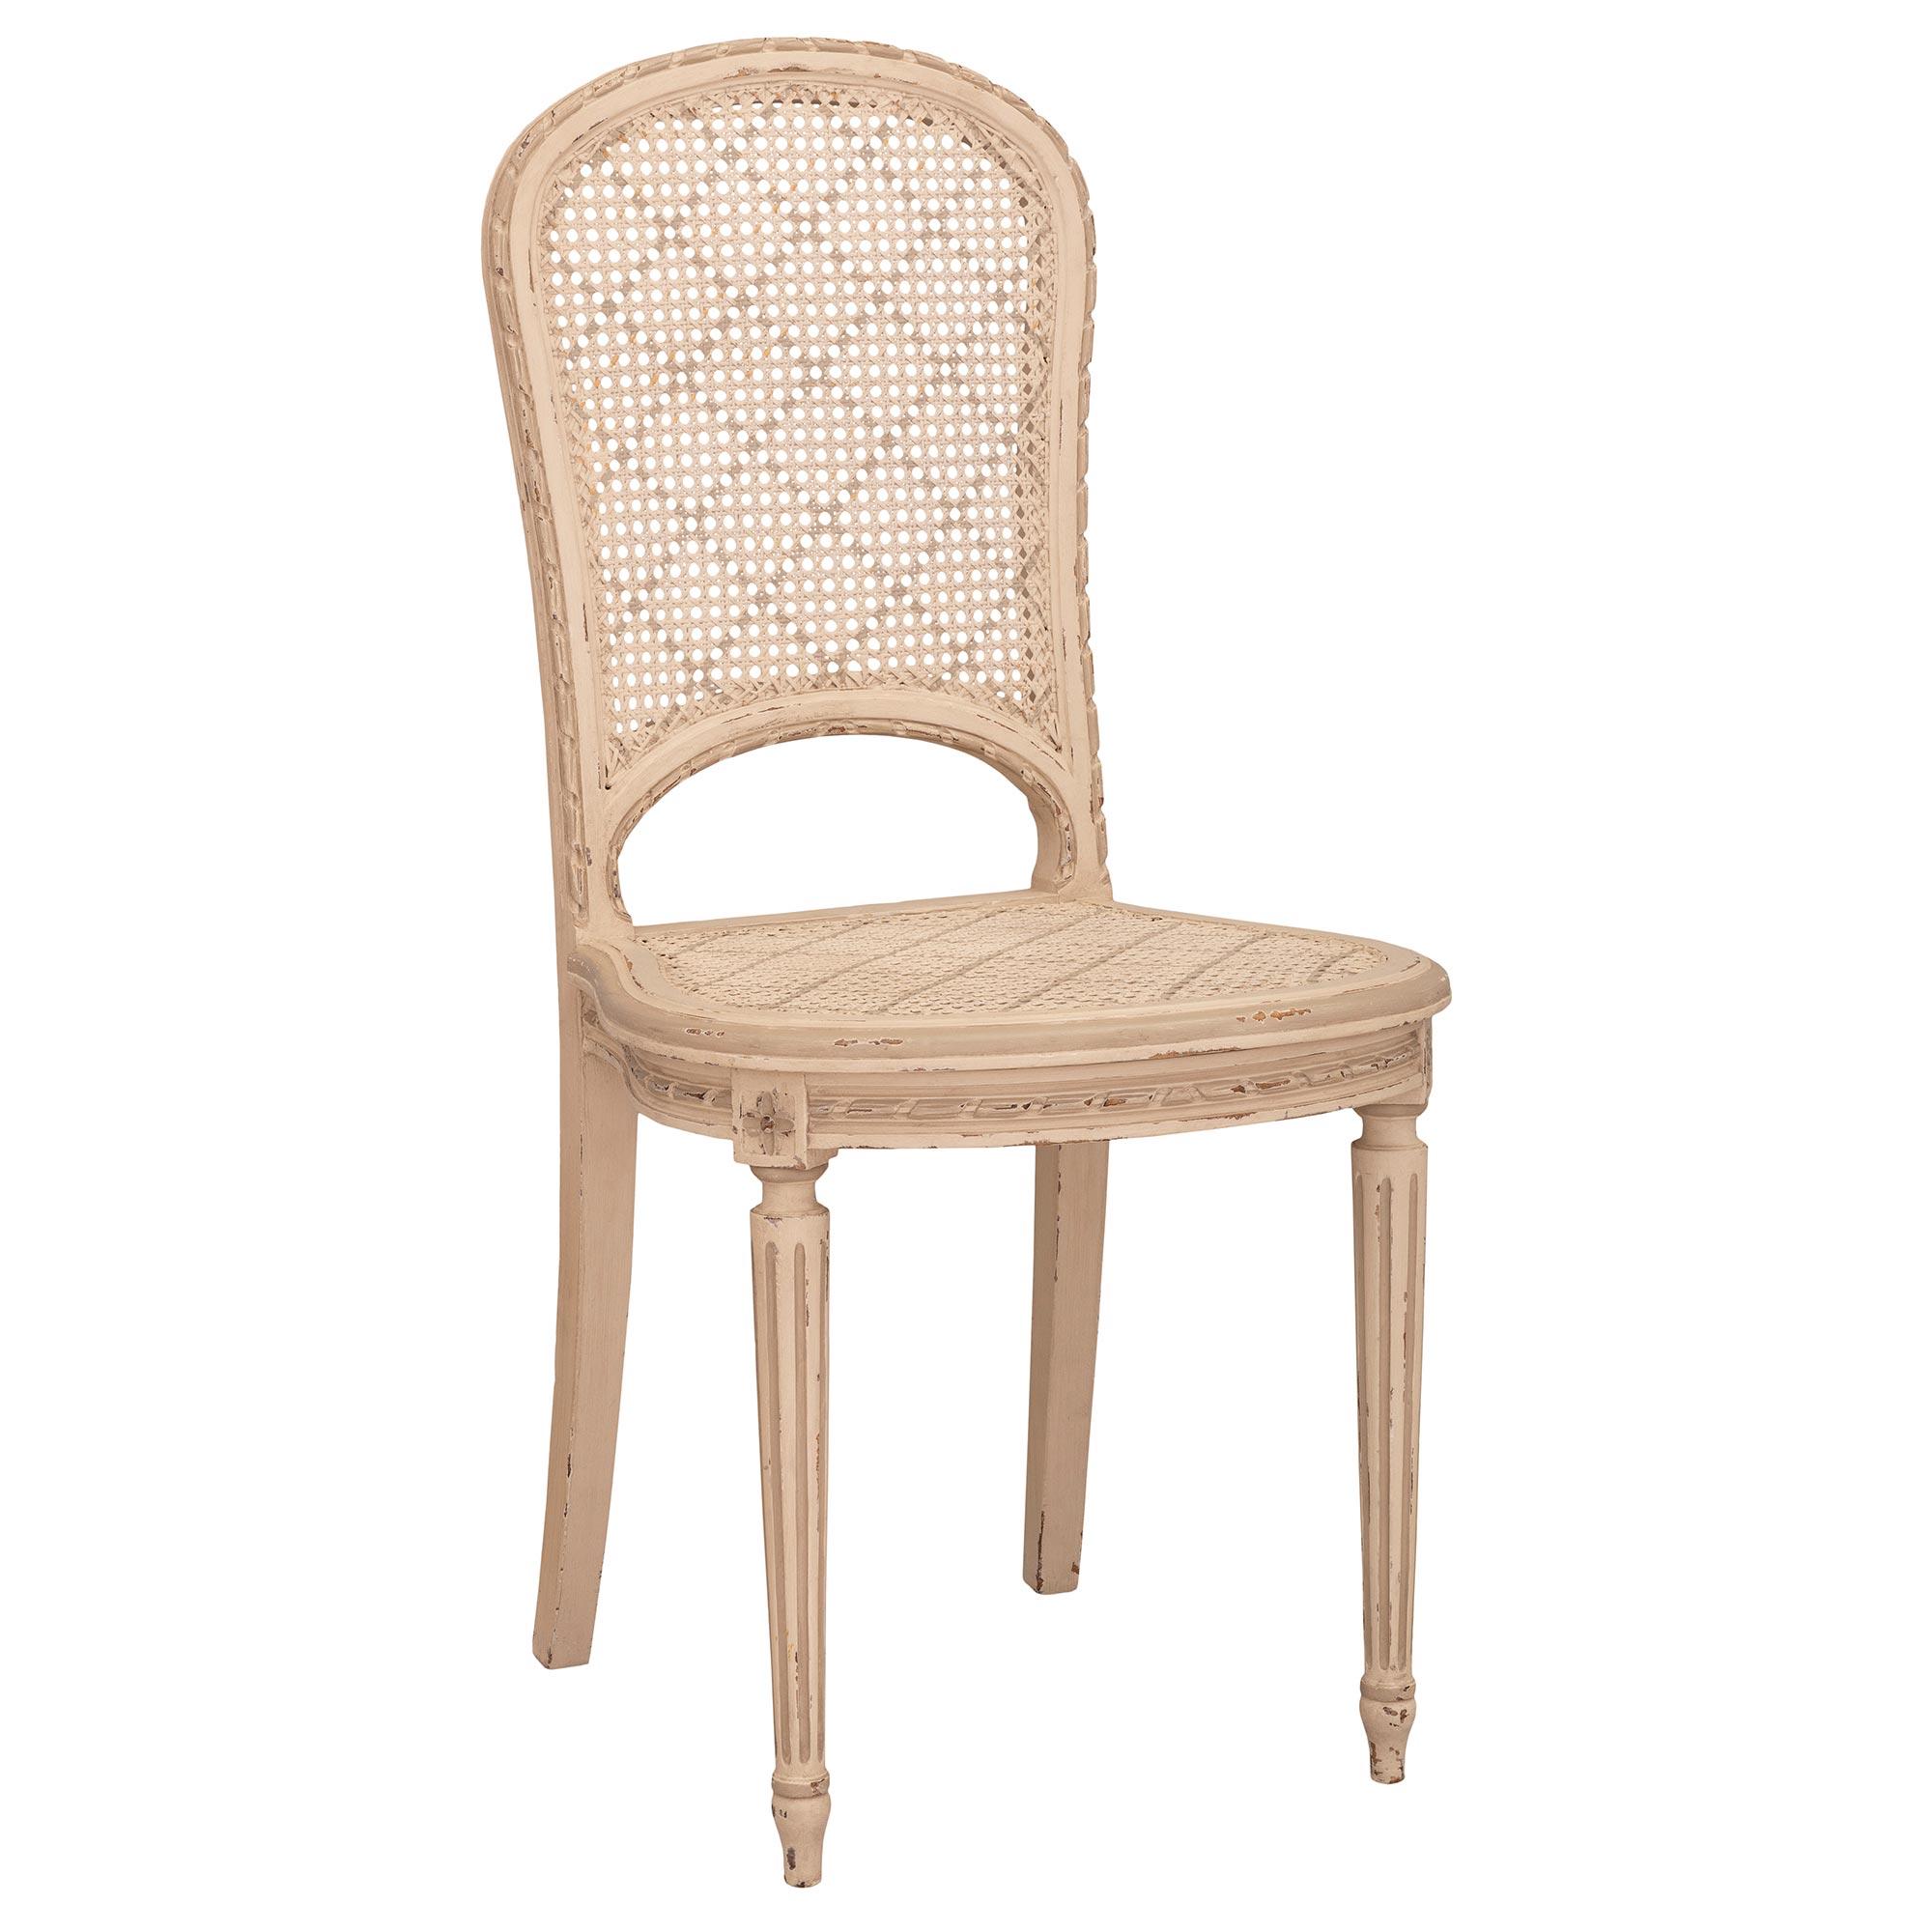 Un ensemble charmant et très élégant de six chaises de salle à manger en bois patiné de style Louis XVI du 19ème siècle. Chaque chaise est surélevée par de fins pieds circulaires fuselés et cannelés, avec de jolis pieds en forme de topie. Au-dessus